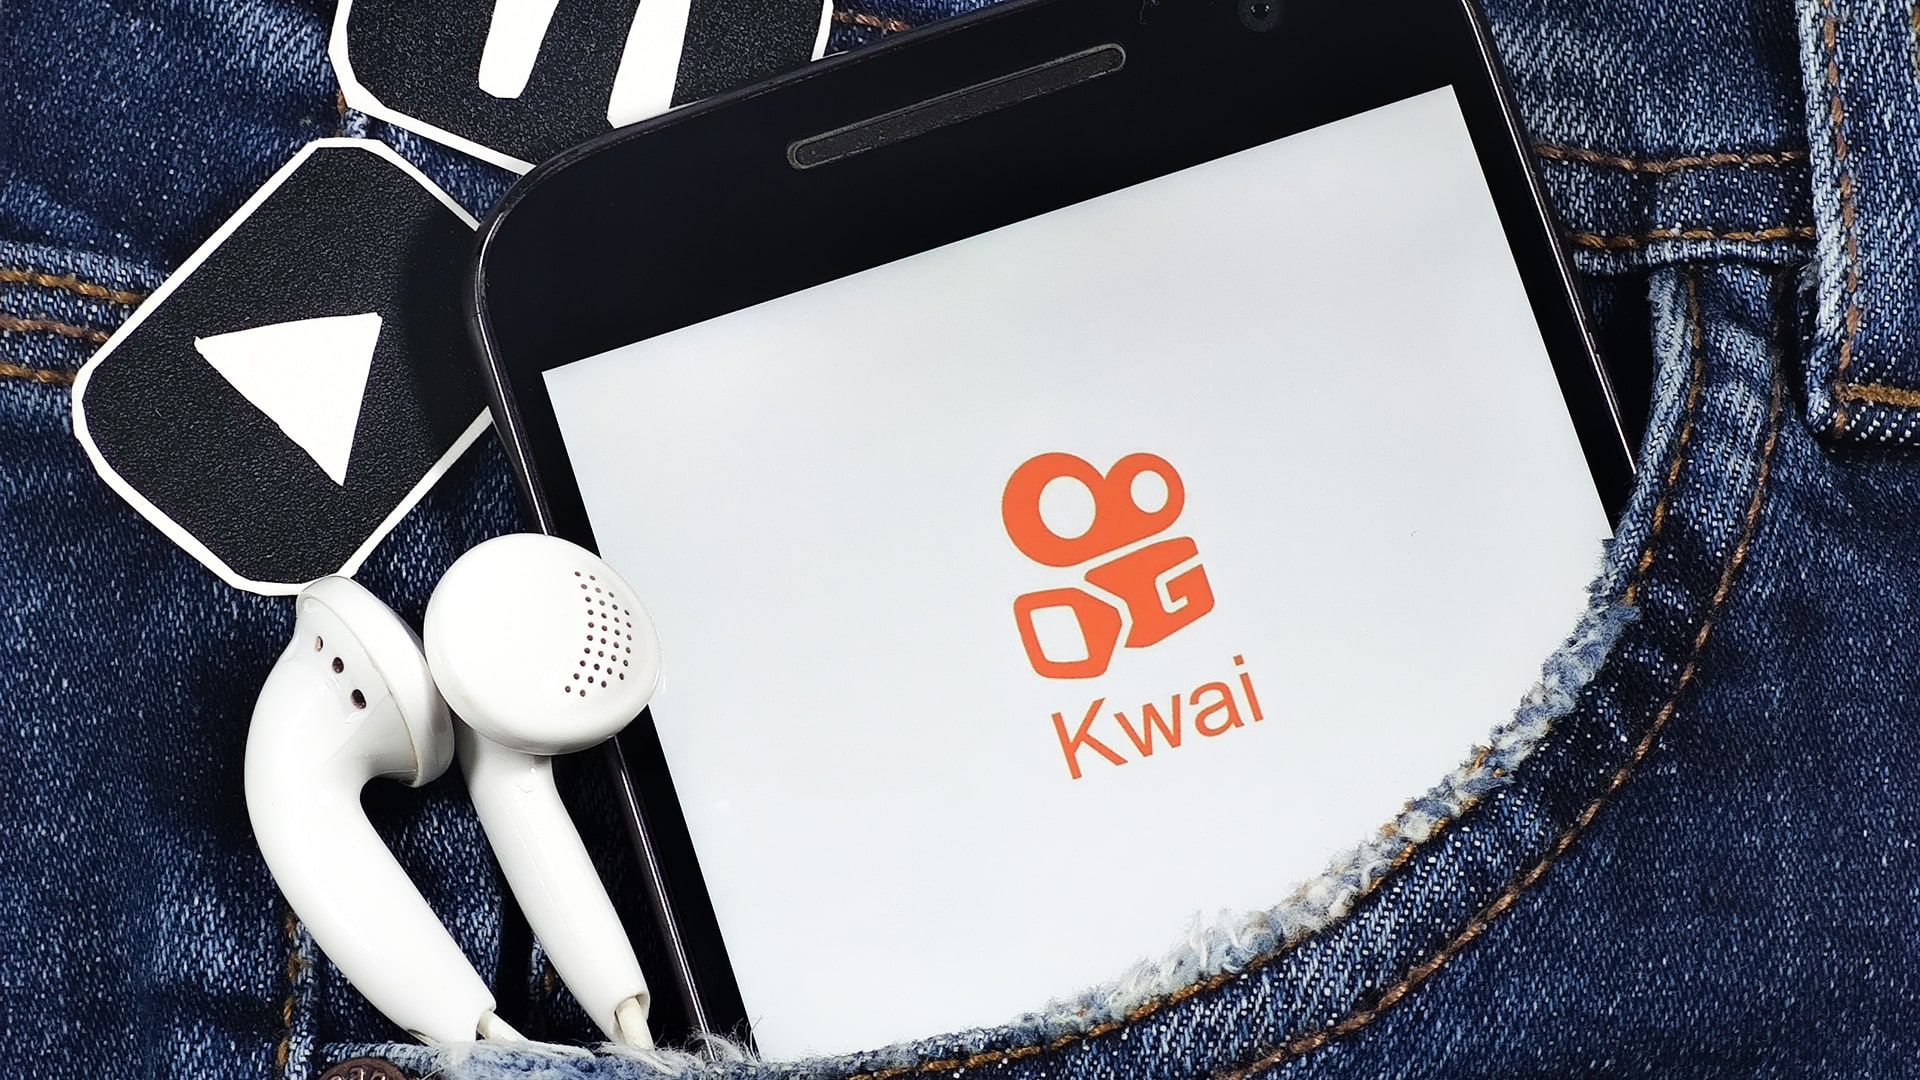 O que é Kwai? Conheça a rede social com vídeos para Status